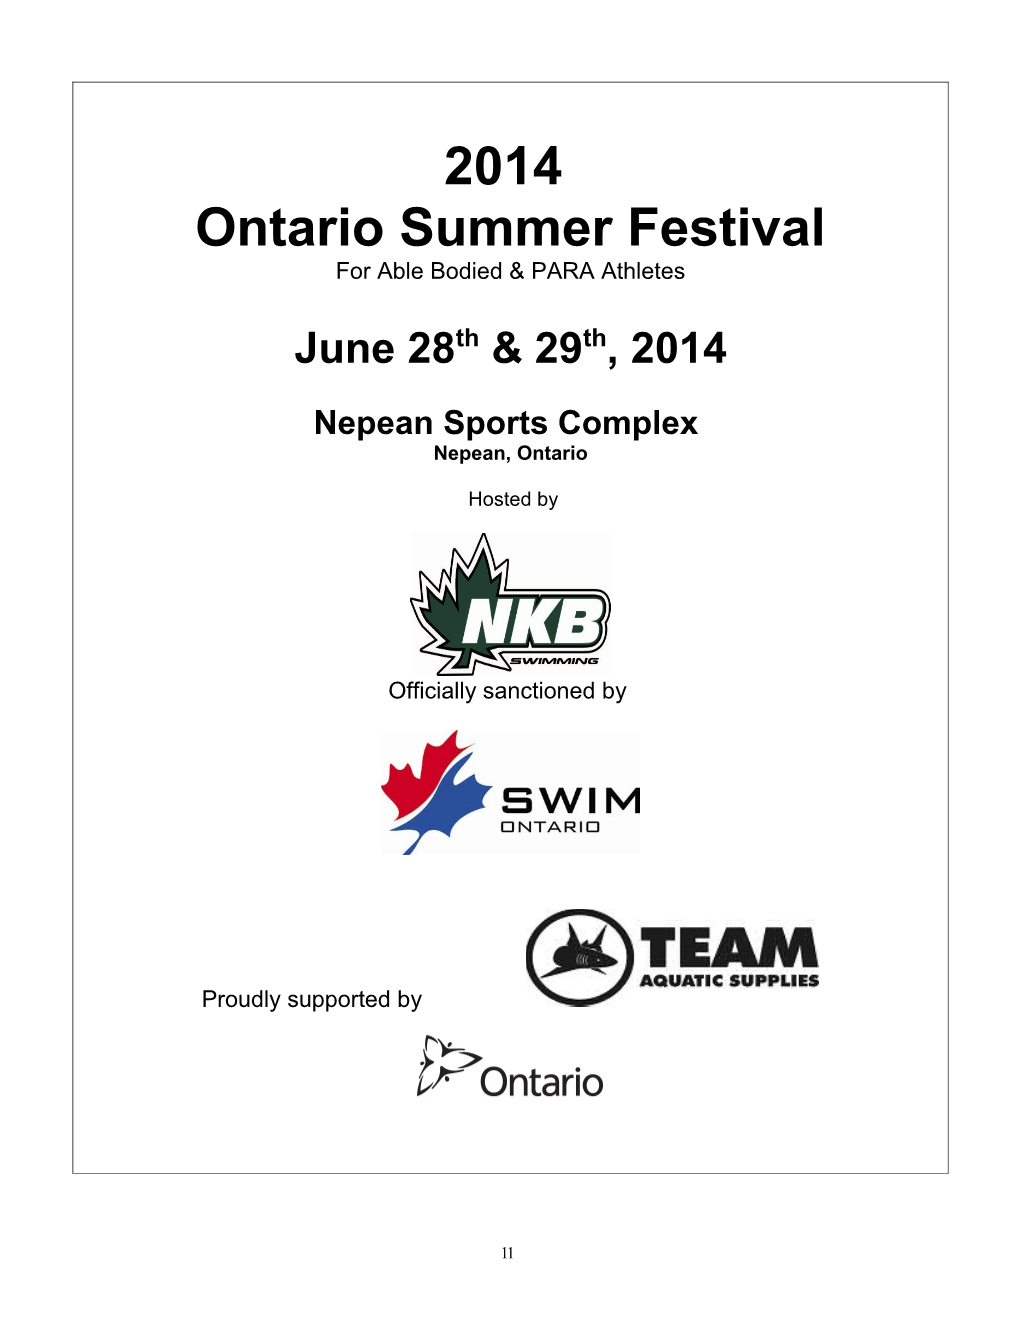 Ontario Summer Festival